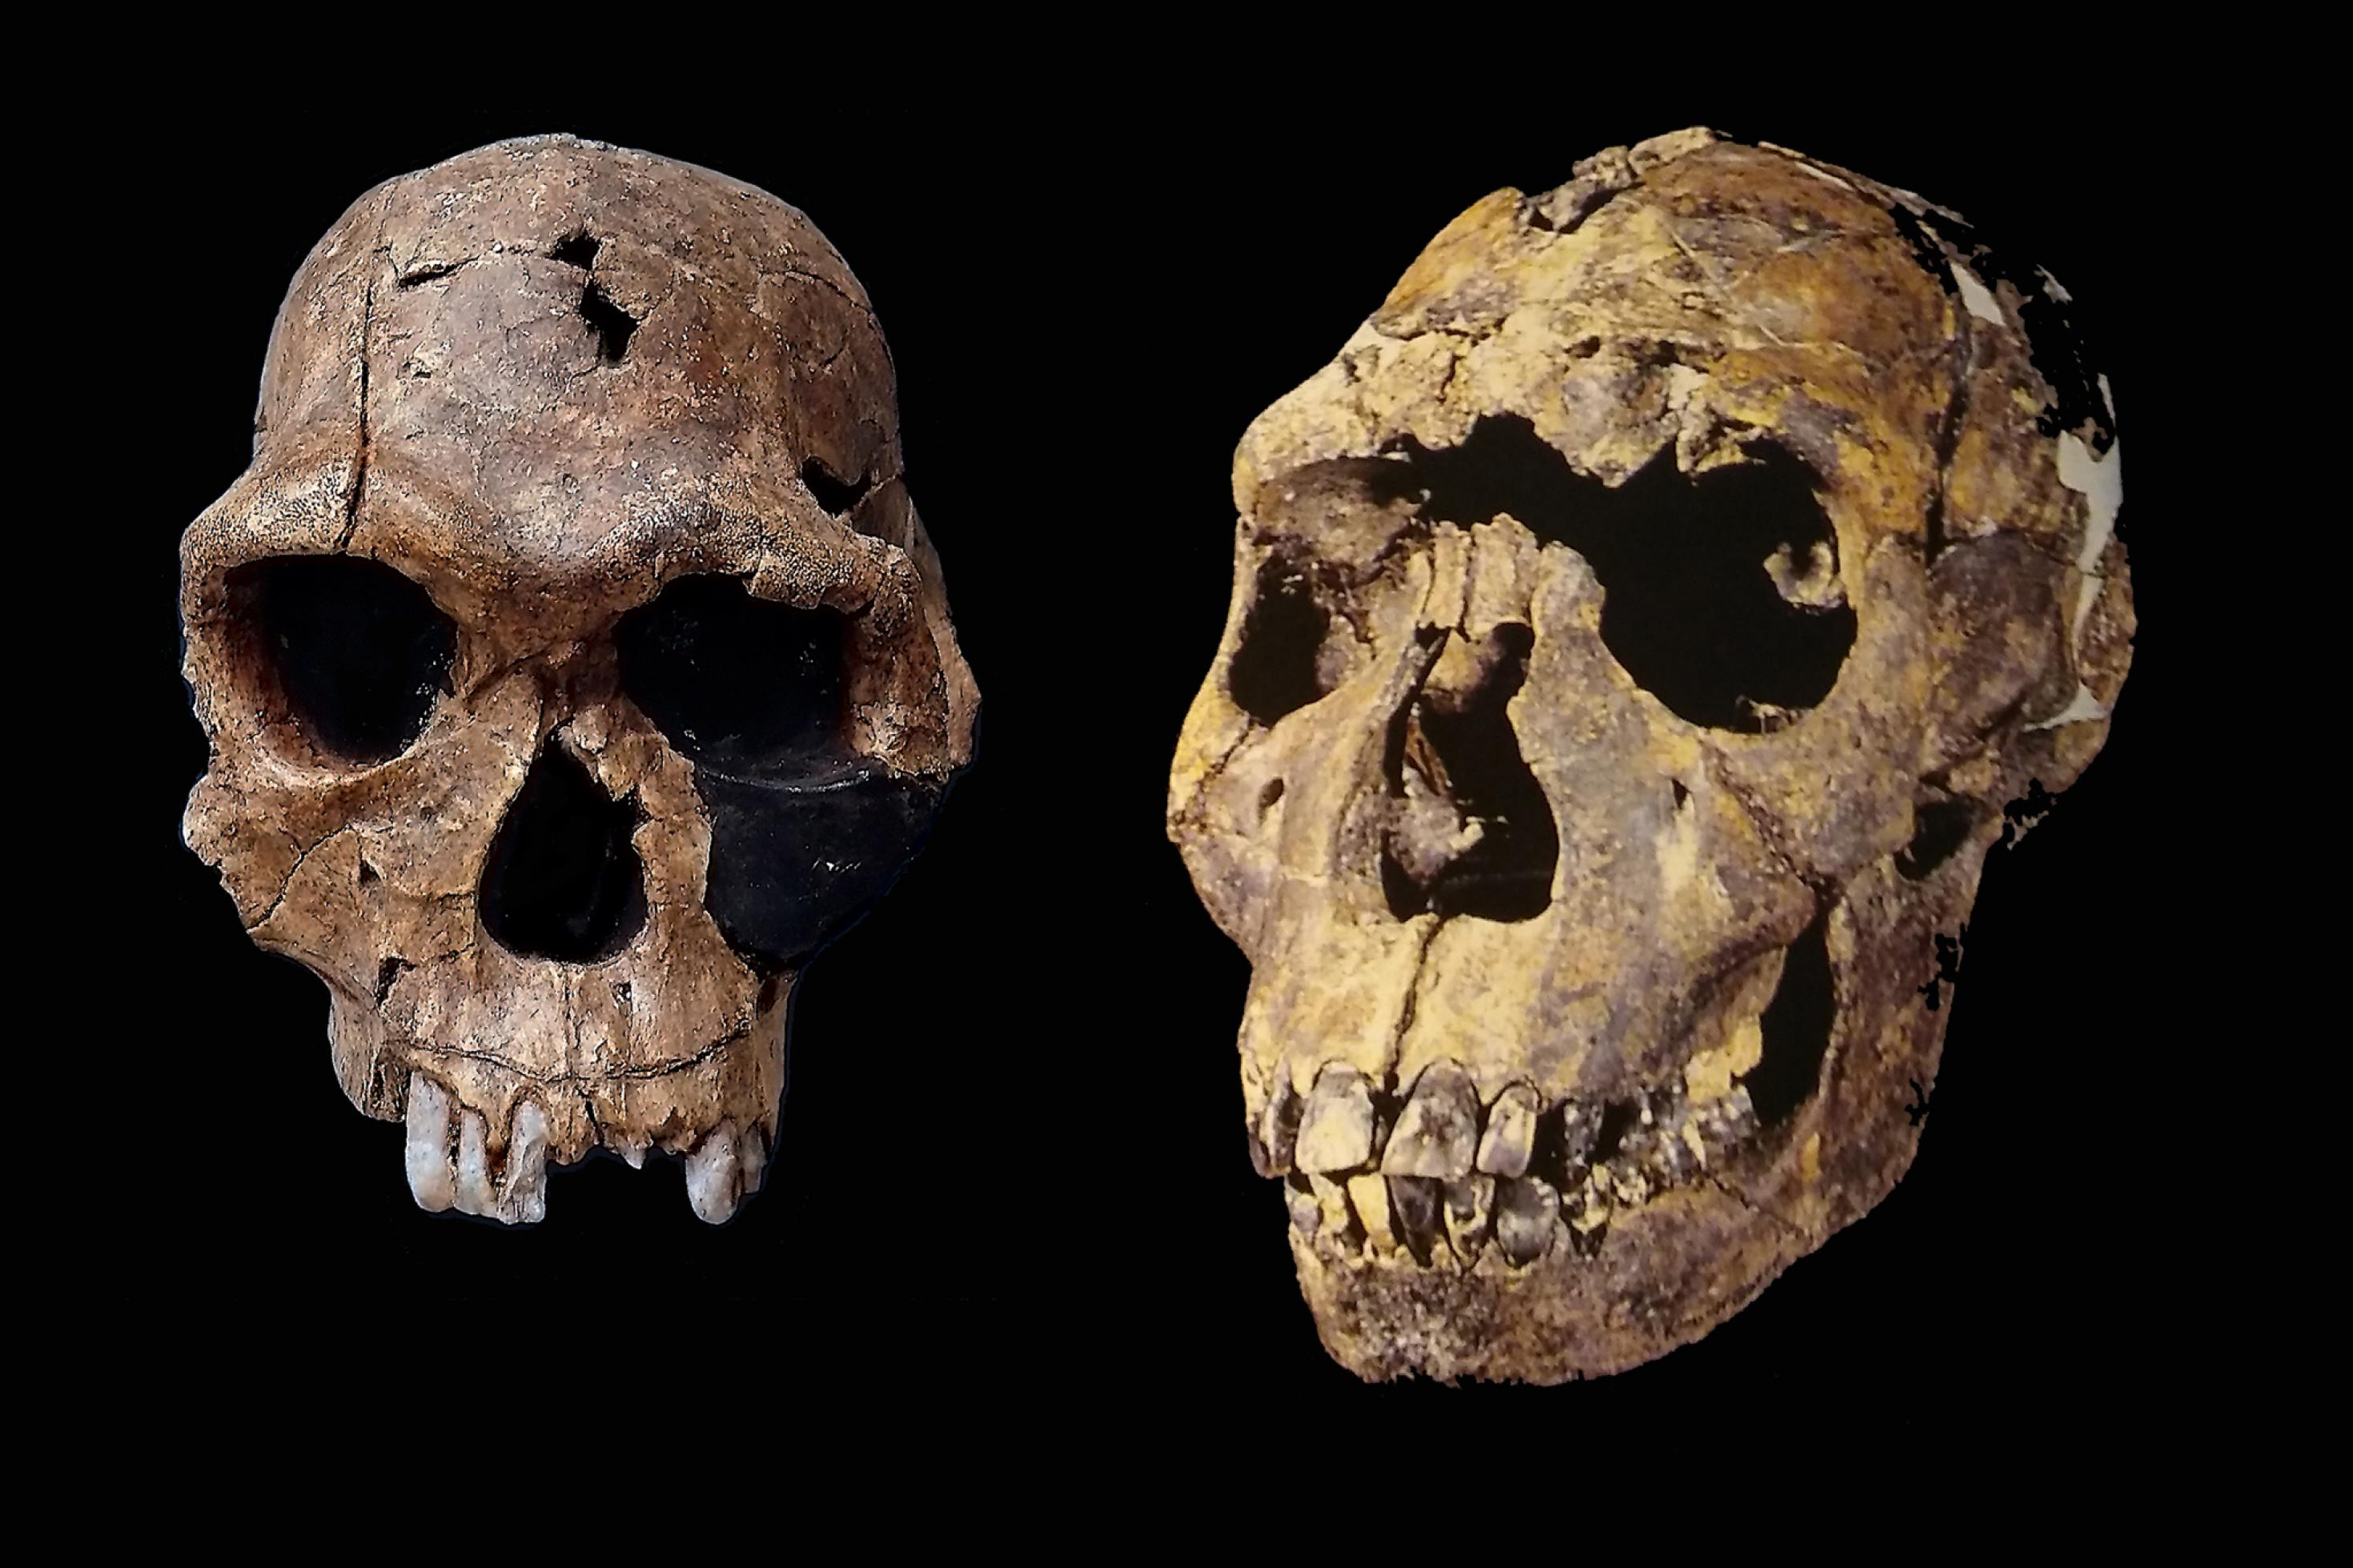 In der linken Hälfte ist in frontaler Ansicht ein dunkelbrauner fossiler Menschenschädel ohne Unterkiefer zu sehen. Er hat dicke Knochenwülste über den Augenhöhlen, der Hirnschädel ist nicht sehr groß, fünf weißliche Zähne ragen aus dem Oberkiefer. Die rechte Bildseite füllt ein etwas größerer, schräg seitlich von vorn gezeigter versteinerter Schädel, dessen Augenwülste weniger stark ausgeprägt sind. Zahlreiche Zähne sitzen in Ober- und Unterkiefer; besonders die oberen Schneidezähne sind sehr groß. Beide Schädel sind aus Bruchstücken zusammengefügt.